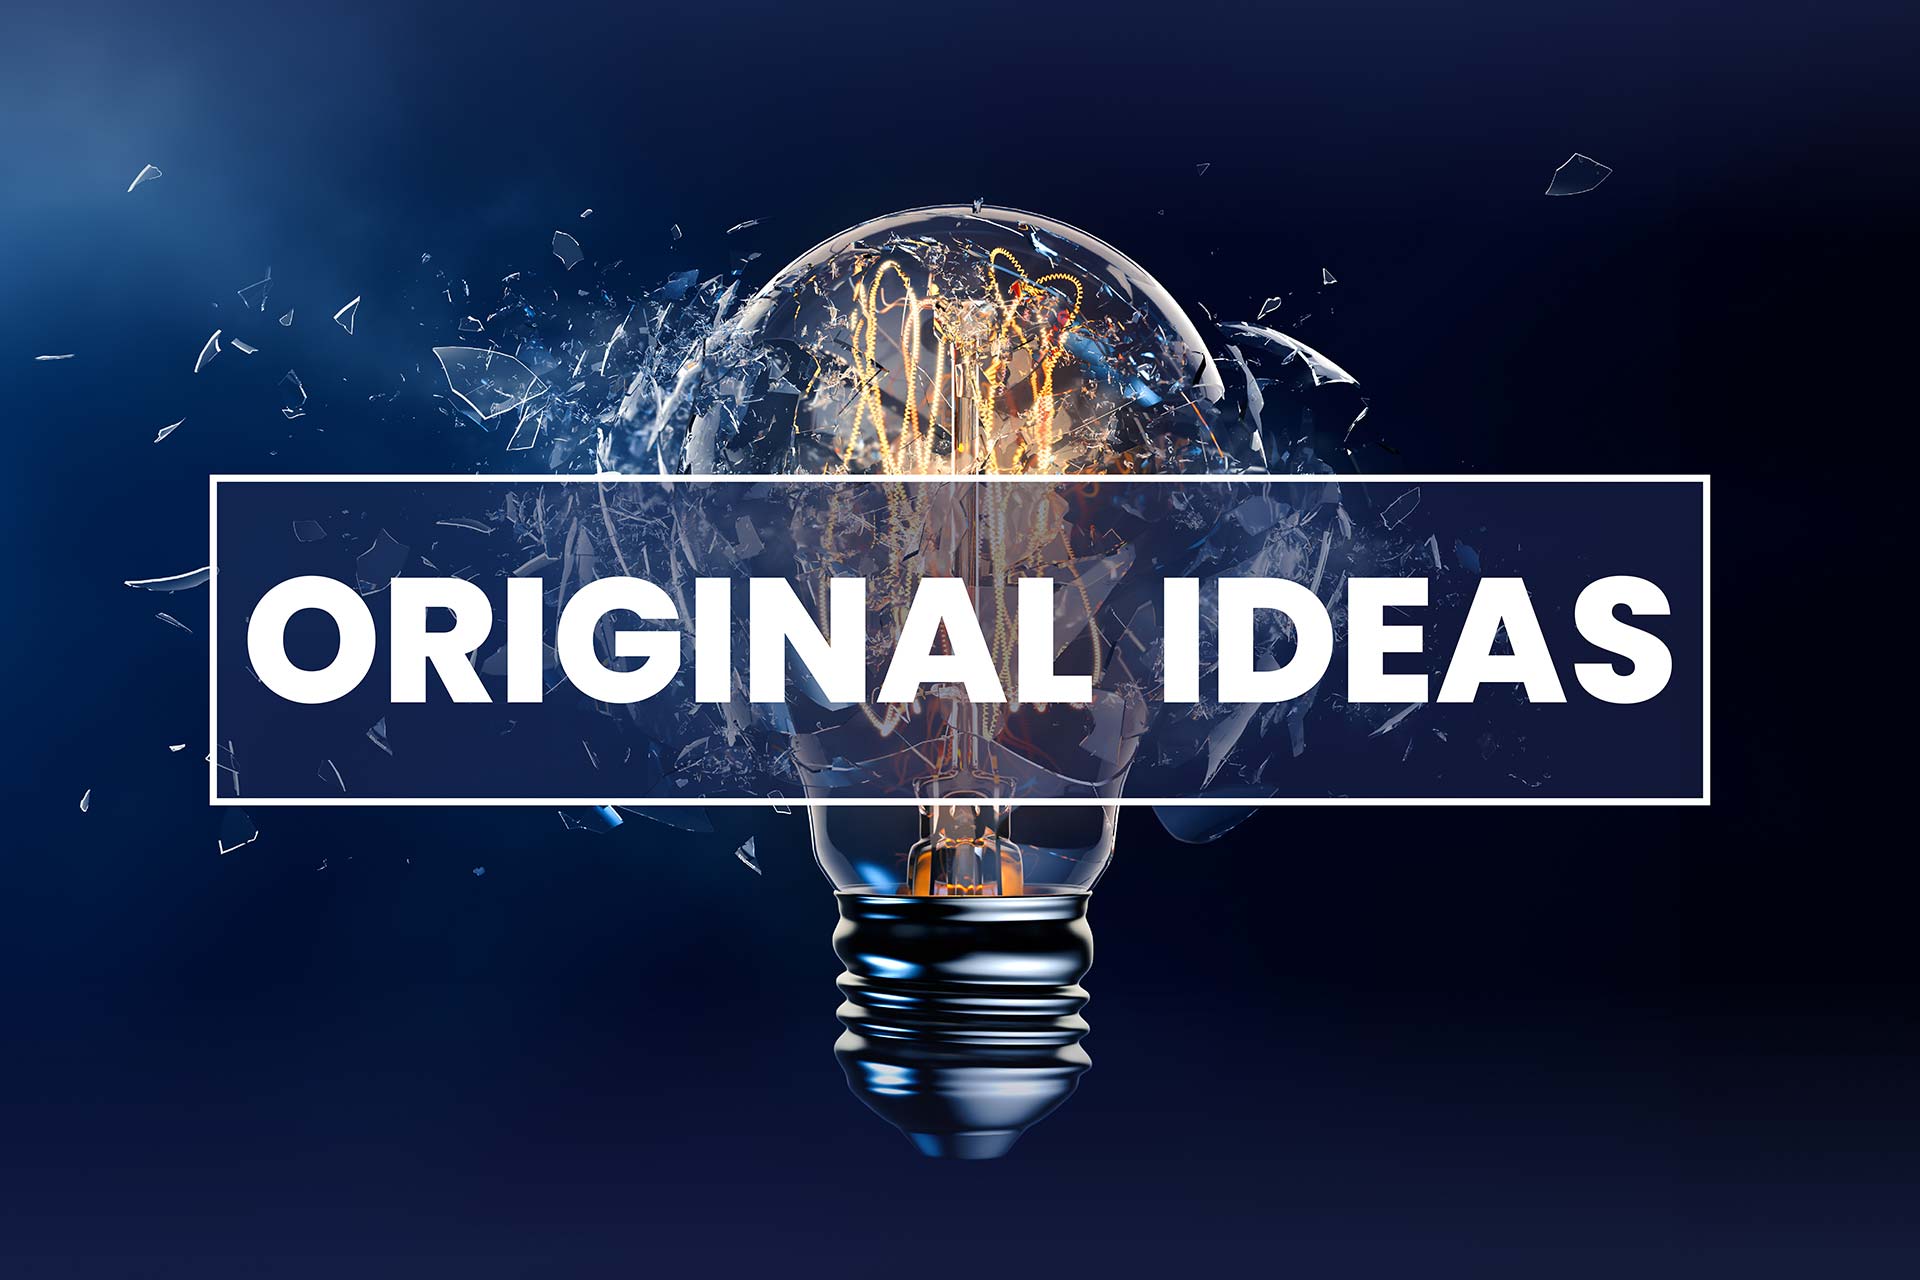 Original Ideas podcast logo featuring a lightbulb.